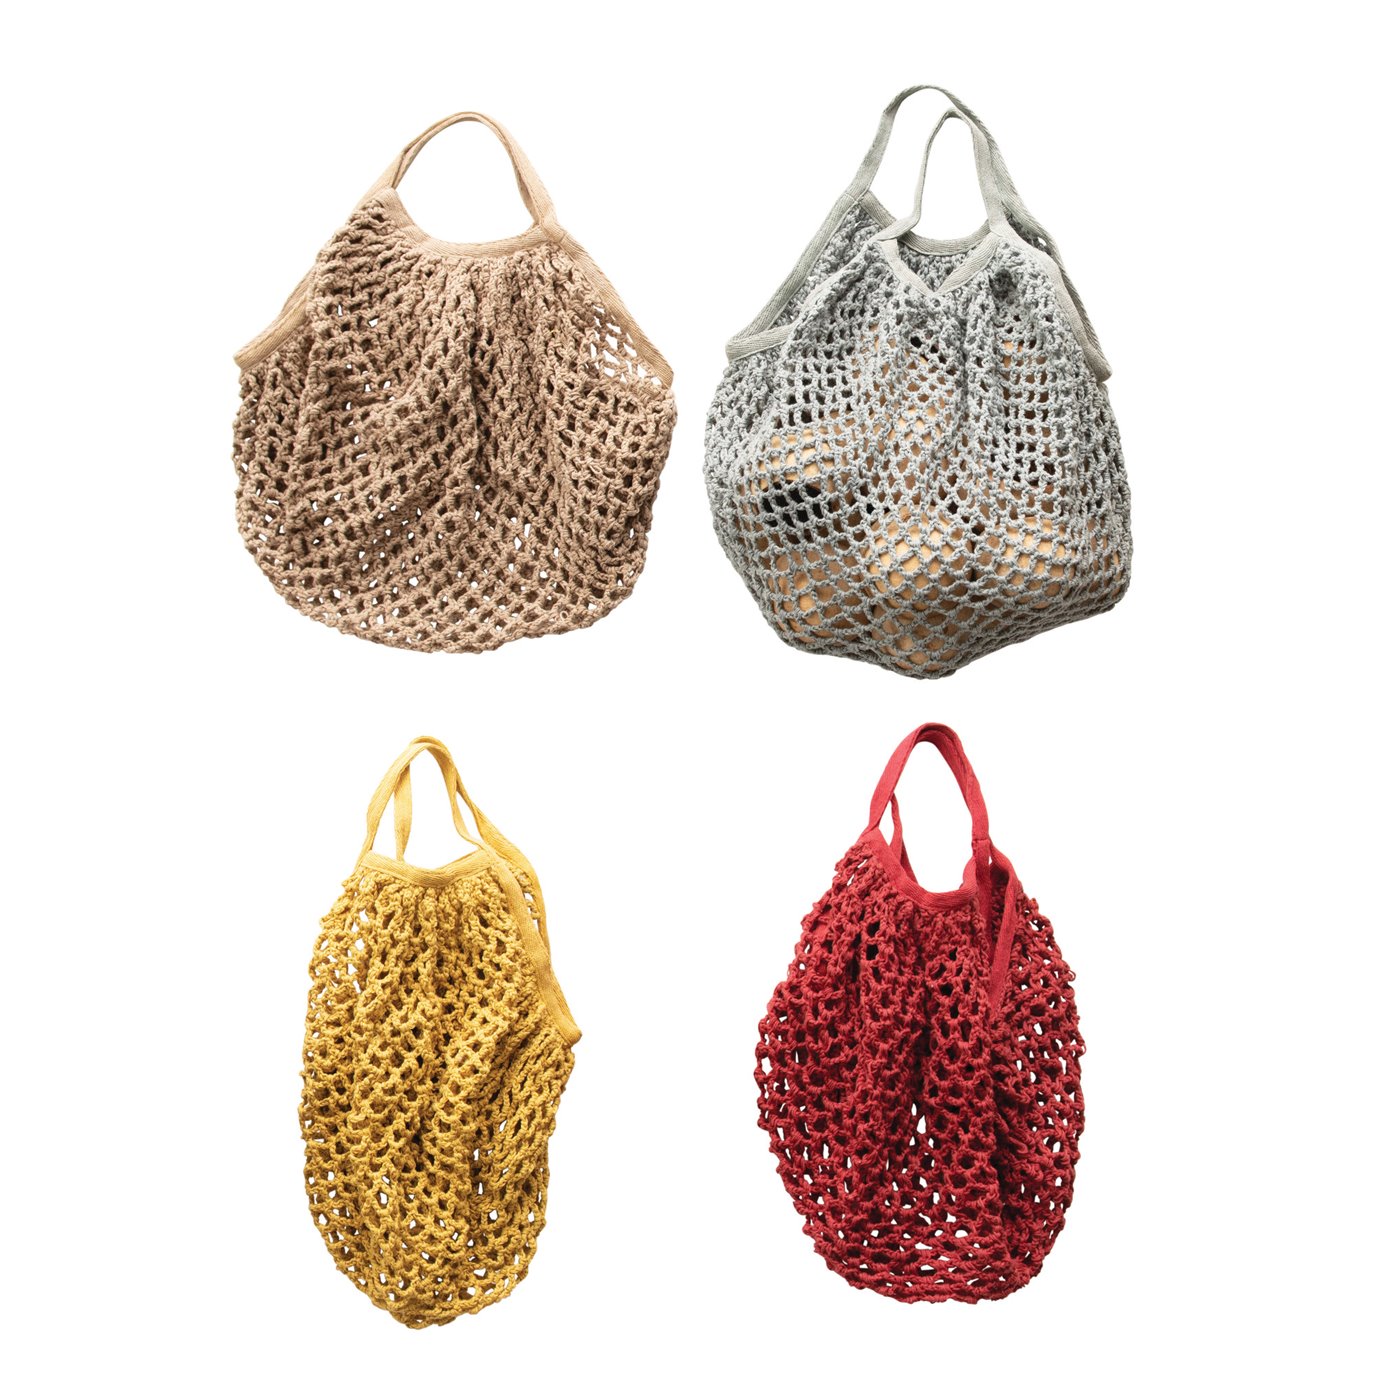 Cotton Crochet Market Bag, 4 Colors